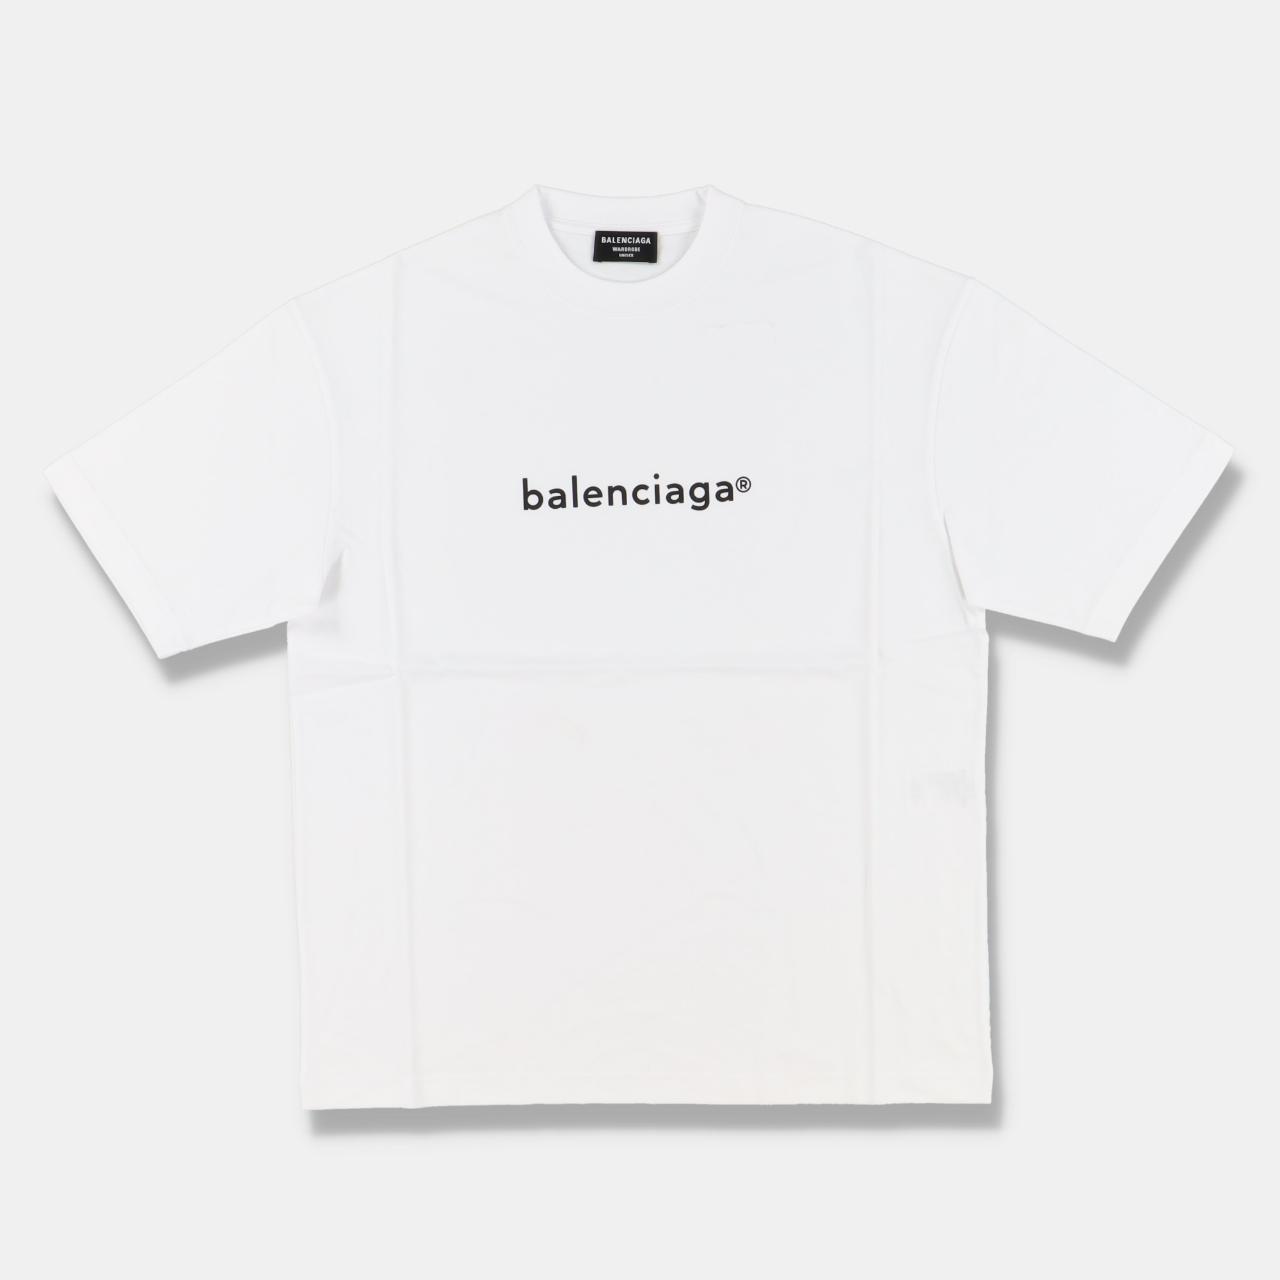 Product Image 1 - Balenciaga White Copyright Logo T-Shirt

-Size